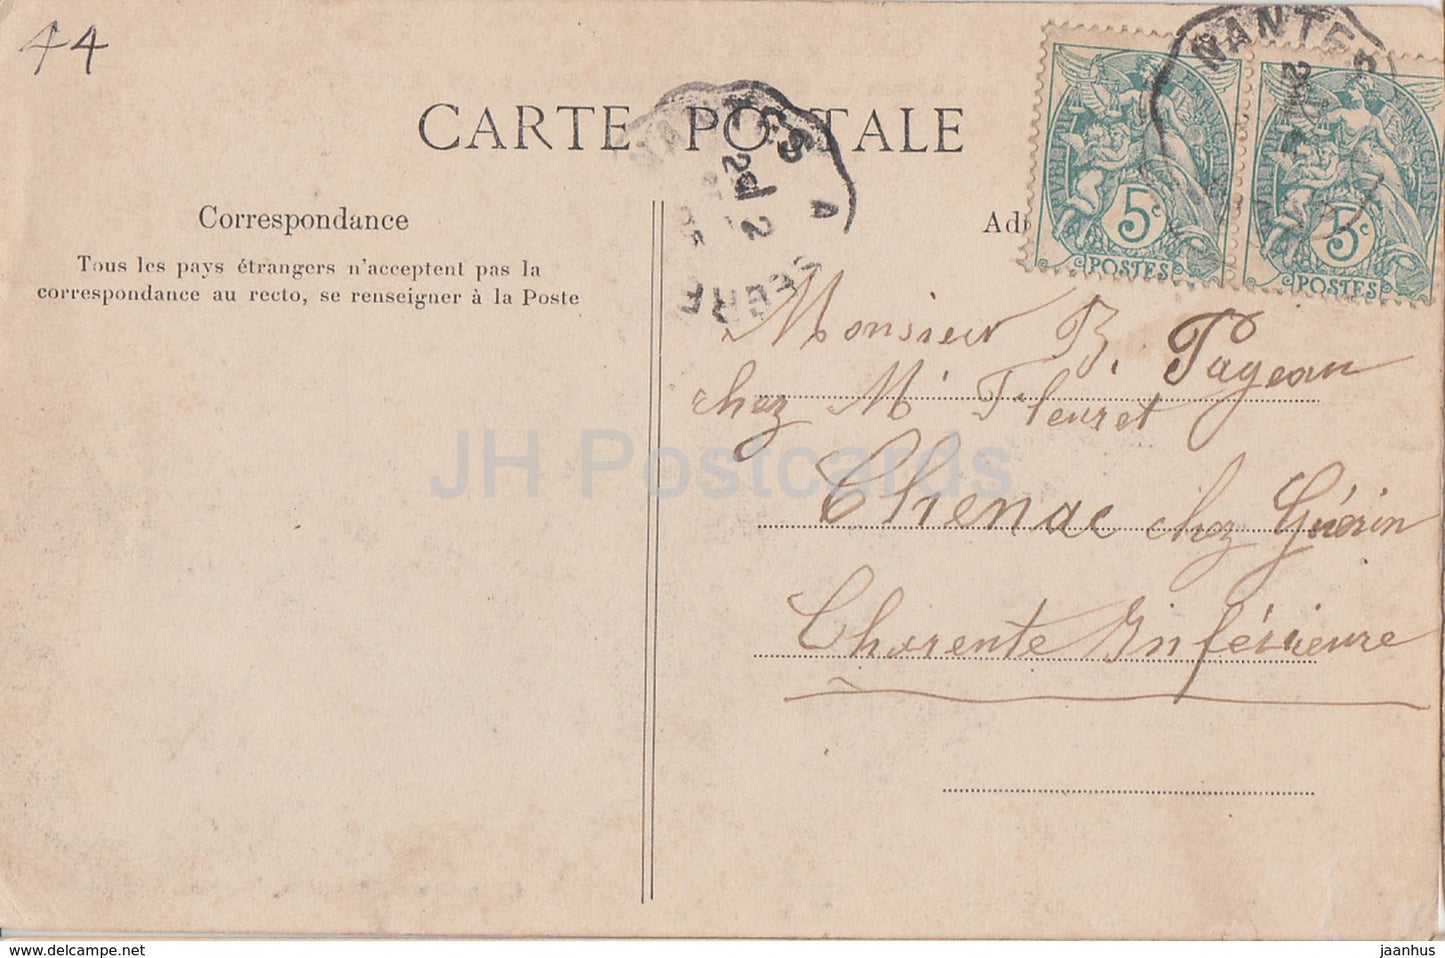 Le Cellier - Chateau de Clermont - Schloss - alte Postkarte - 1905 - Frankreich - gebraucht